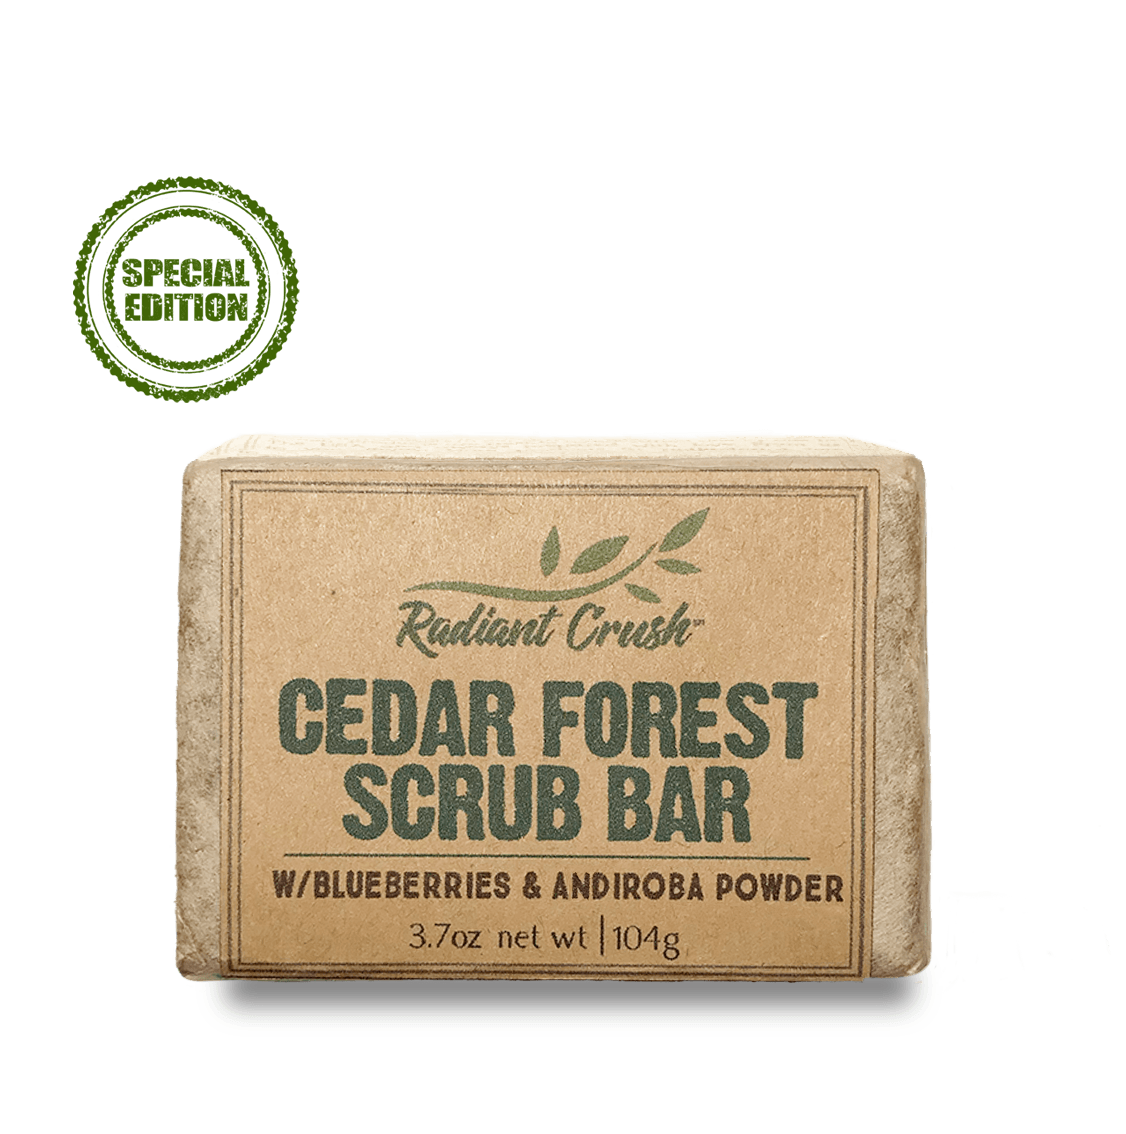 Cedar Forest Scrub Bar - Radiant Crush